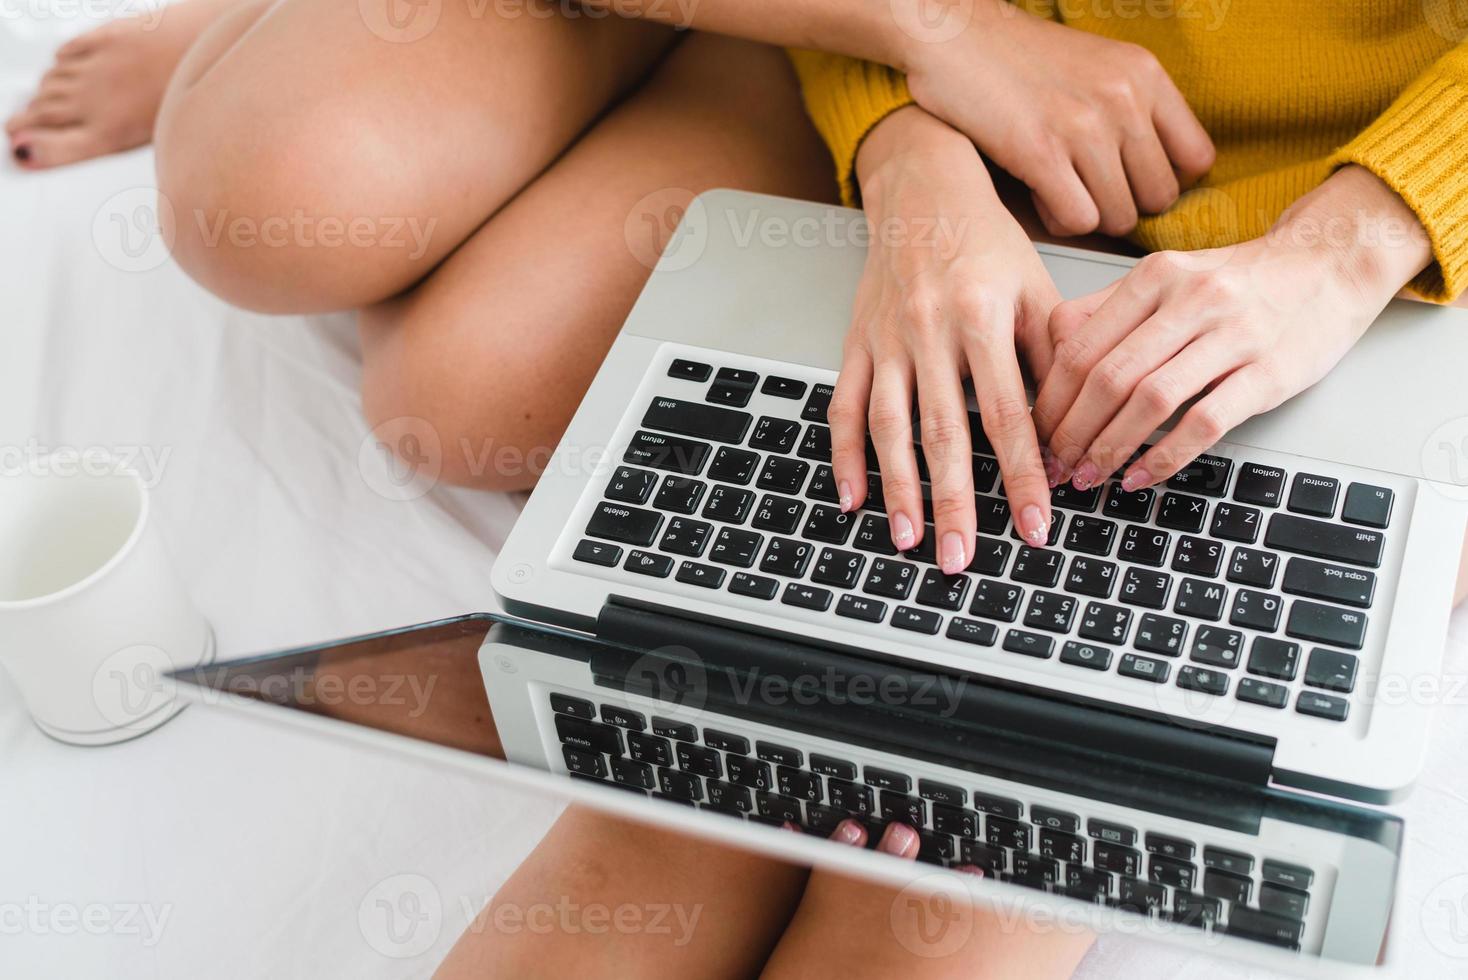 mooie jonge Aziatische vrouwen lgbt lesbische gelukkige paar zittend op bed knuffel en met behulp van laptop computer samen slaapkamer thuis. LGBT lesbisch koppel samen binnenshuis concept. leuke tijd thuis doorbrengen. foto